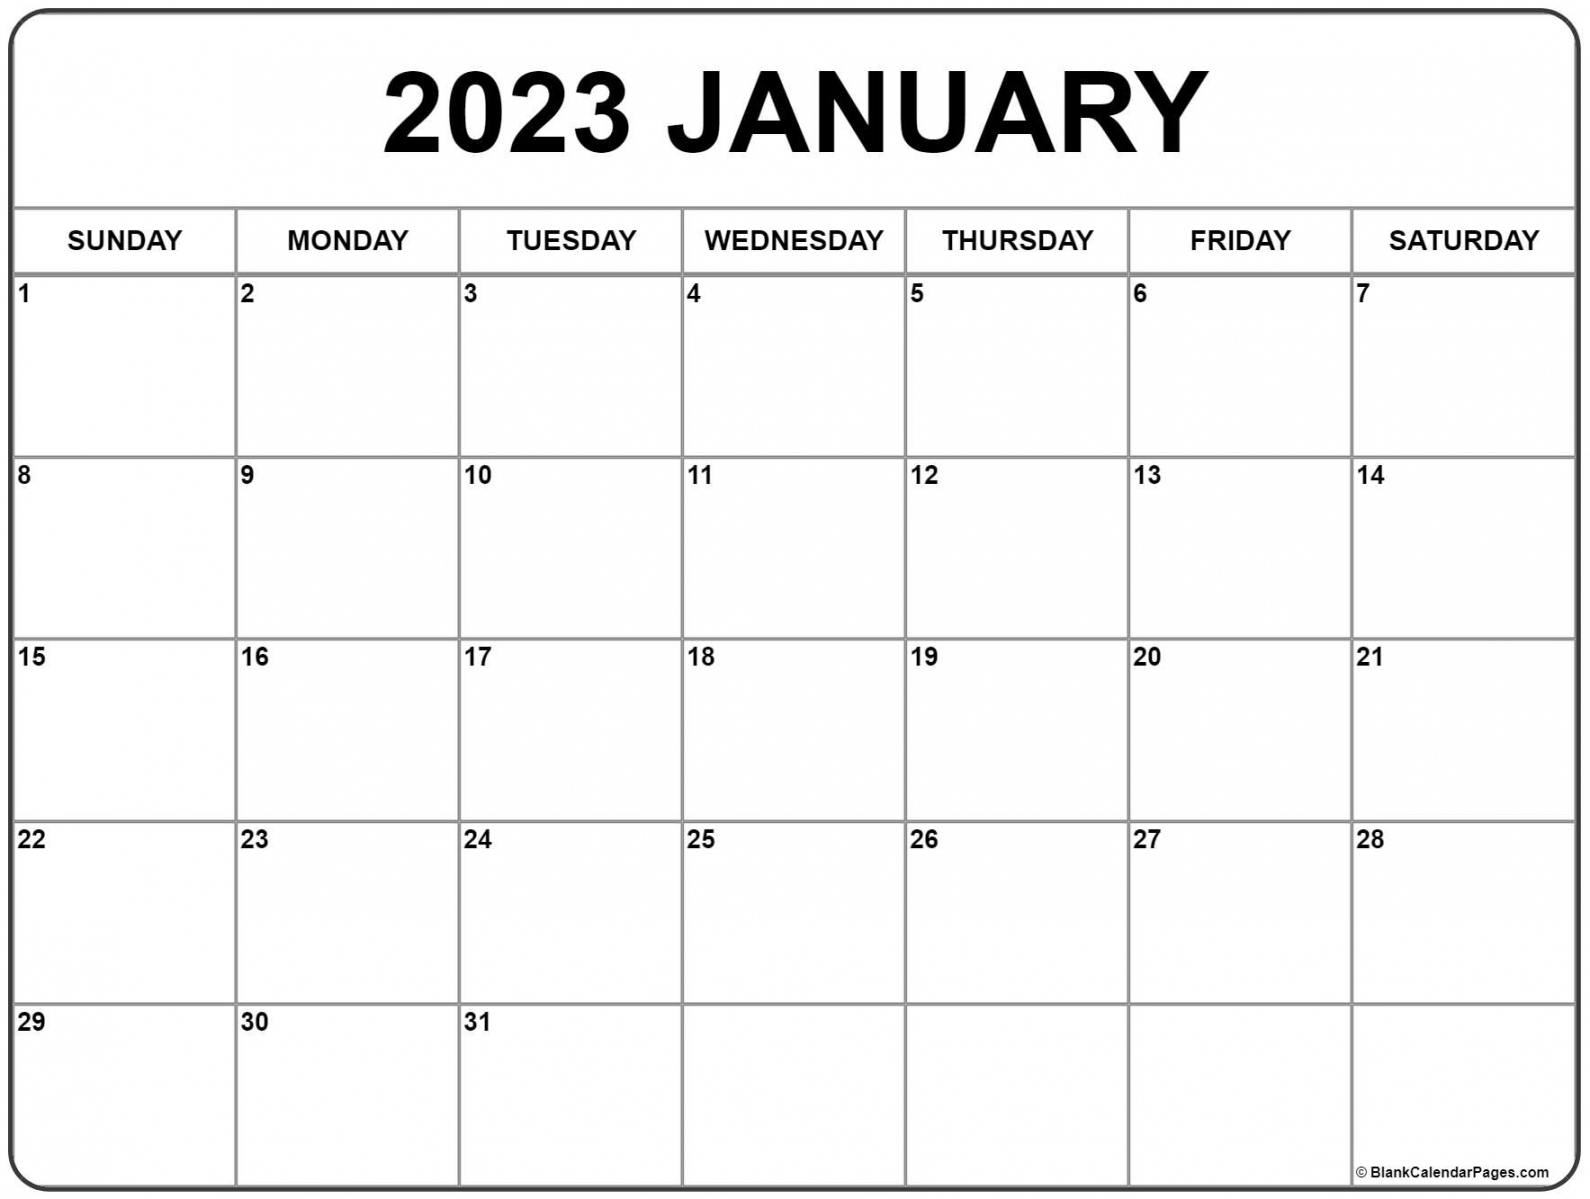 Free Calendar 2023 Printable - Printable - January  calendar  free printable calendar